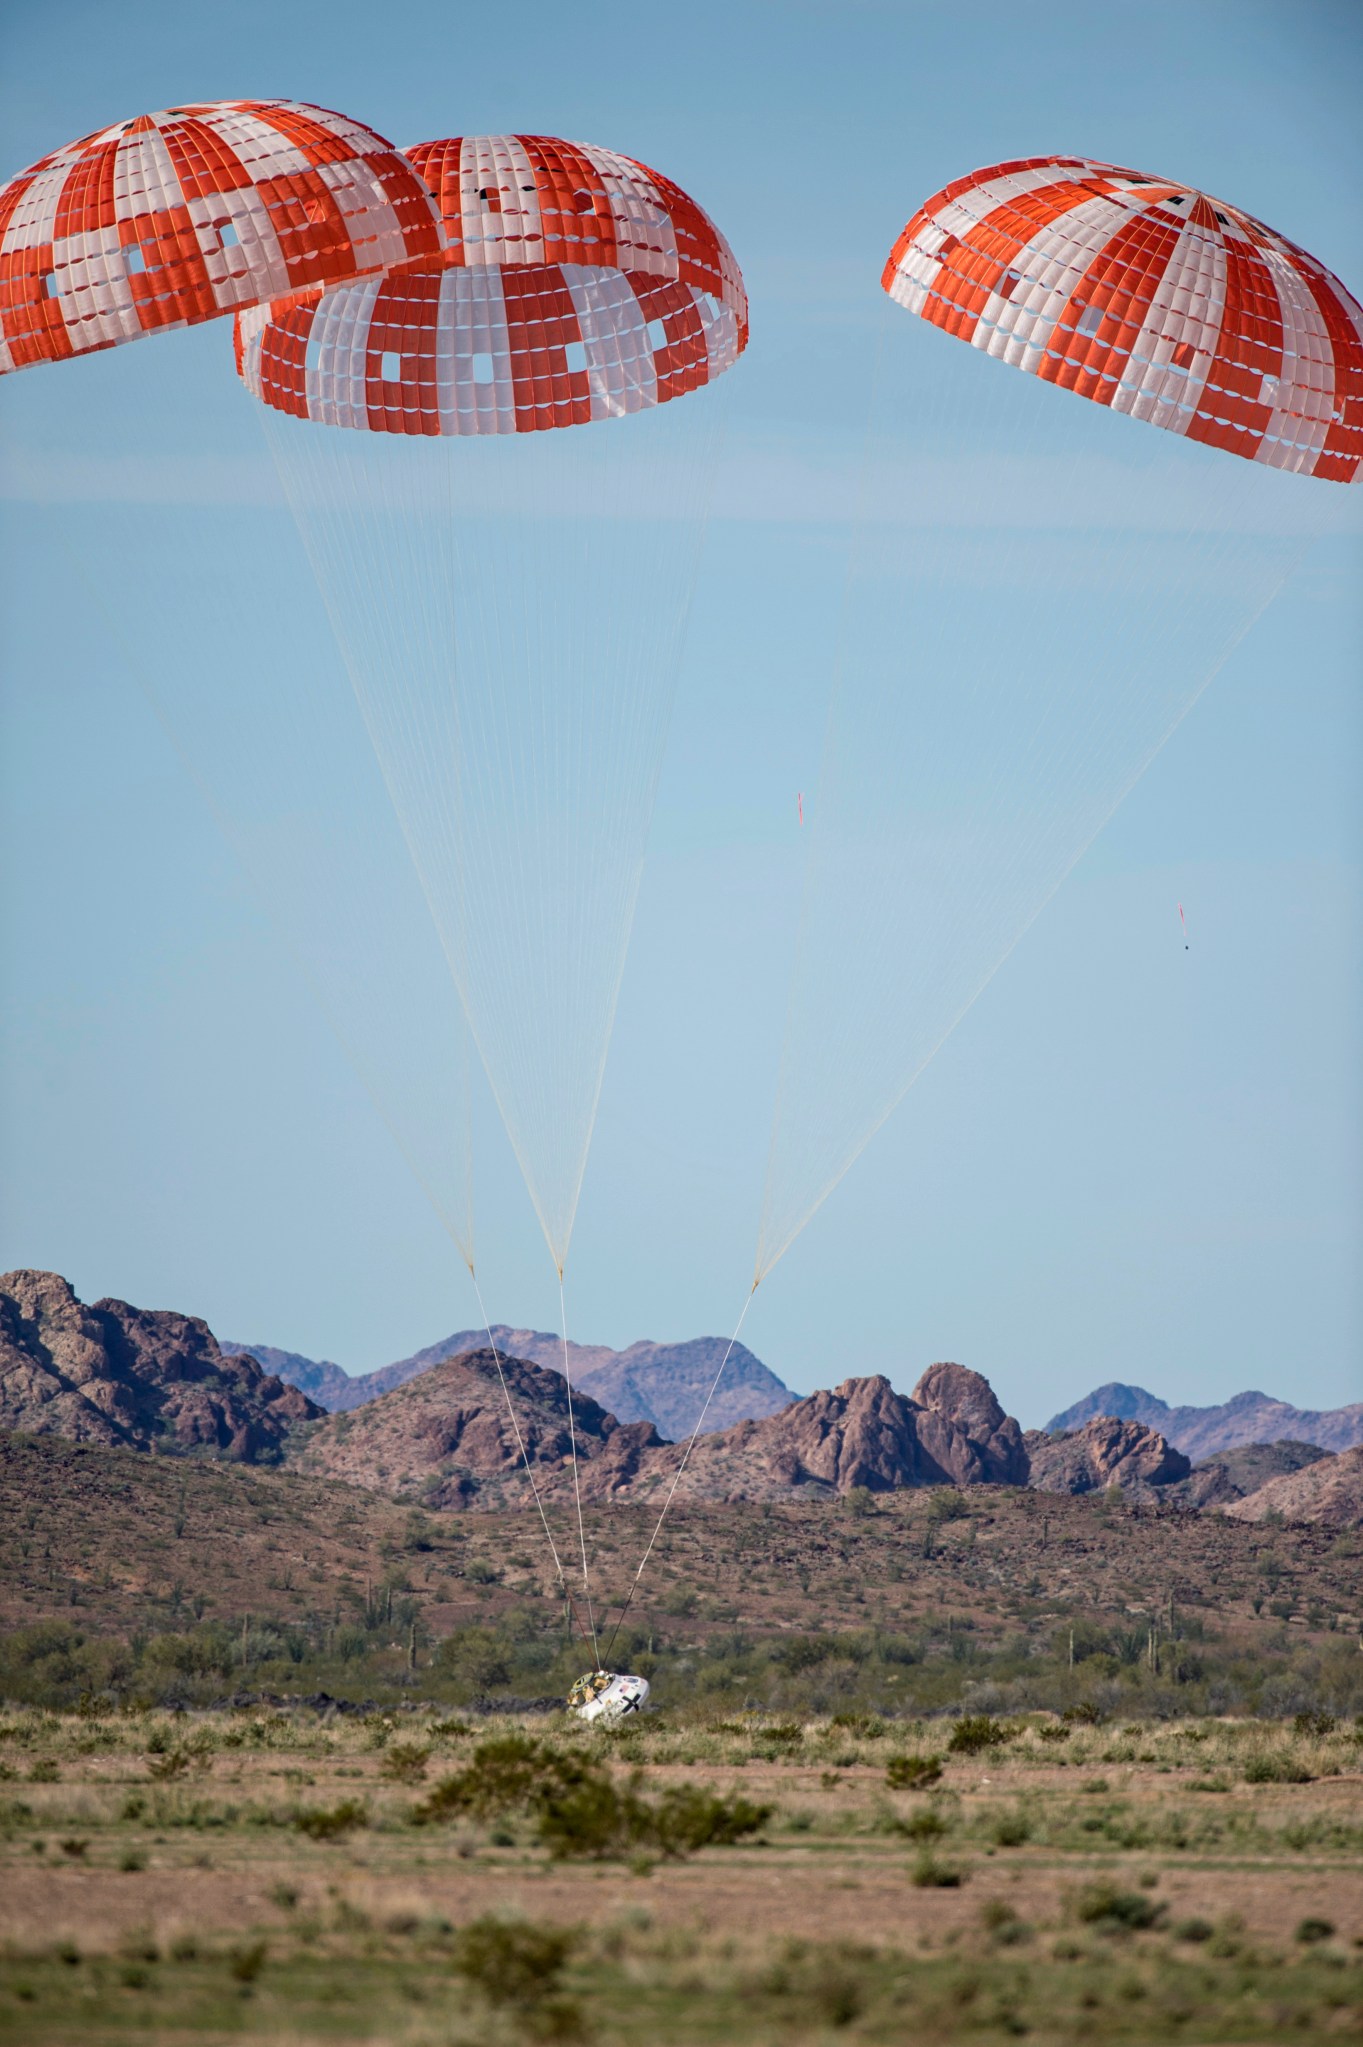 March 2017 Orion parachute test